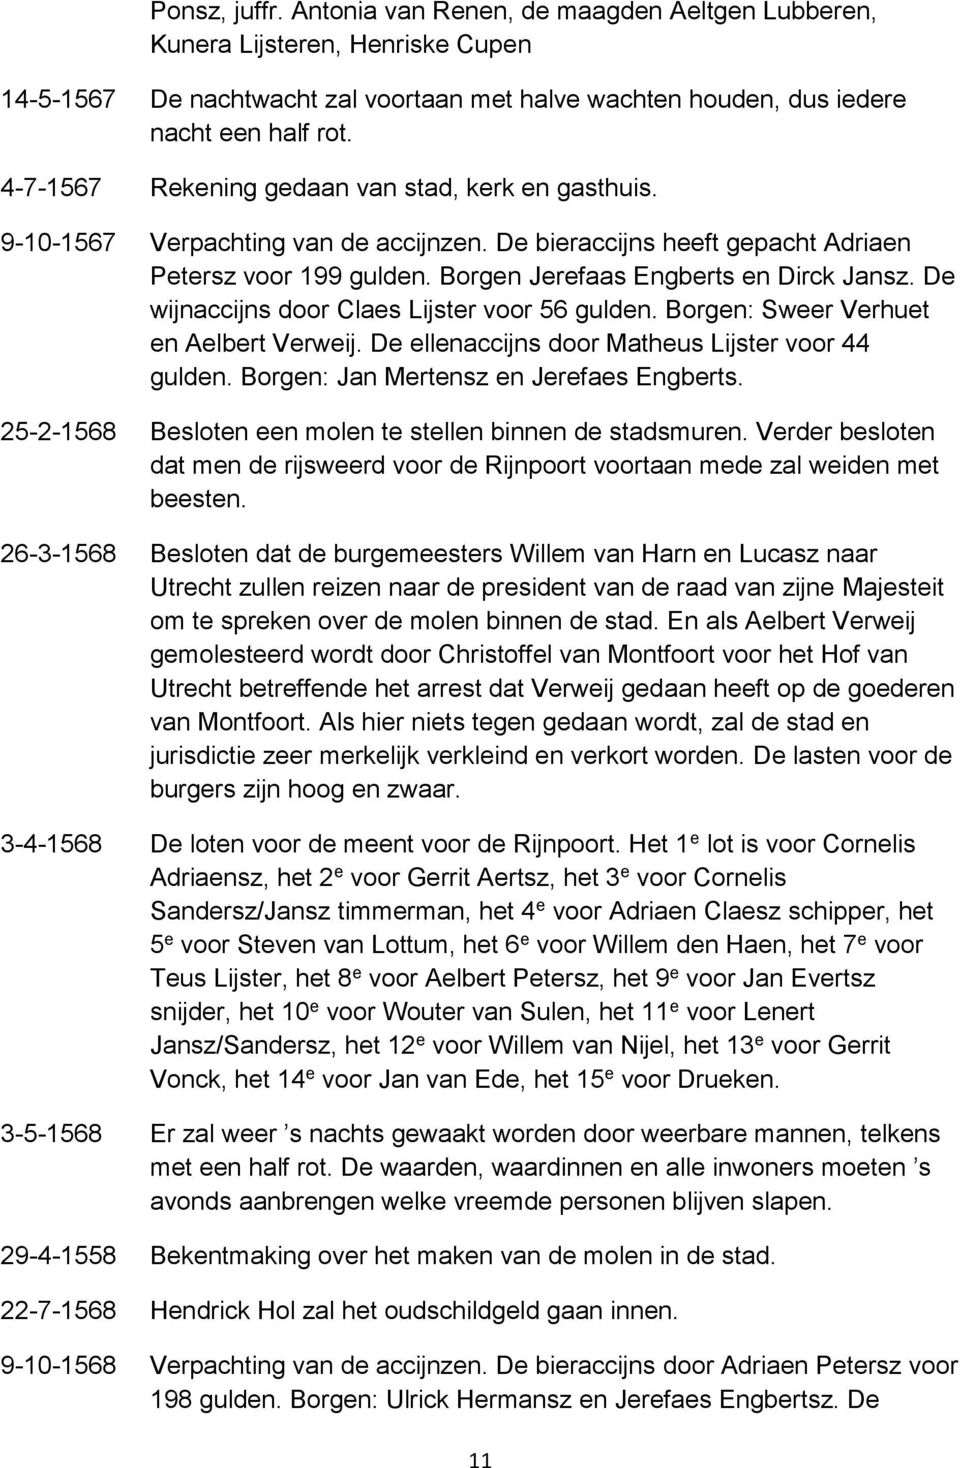 De wijnaccijns door Claes Lijster voor 56 gulden. Borgen: Sweer Verhuet en Aelbert Verweij. De ellenaccijns door Matheus Lijster voor 44 gulden. Borgen: Jan Mertensz en Jerefaes Engberts.